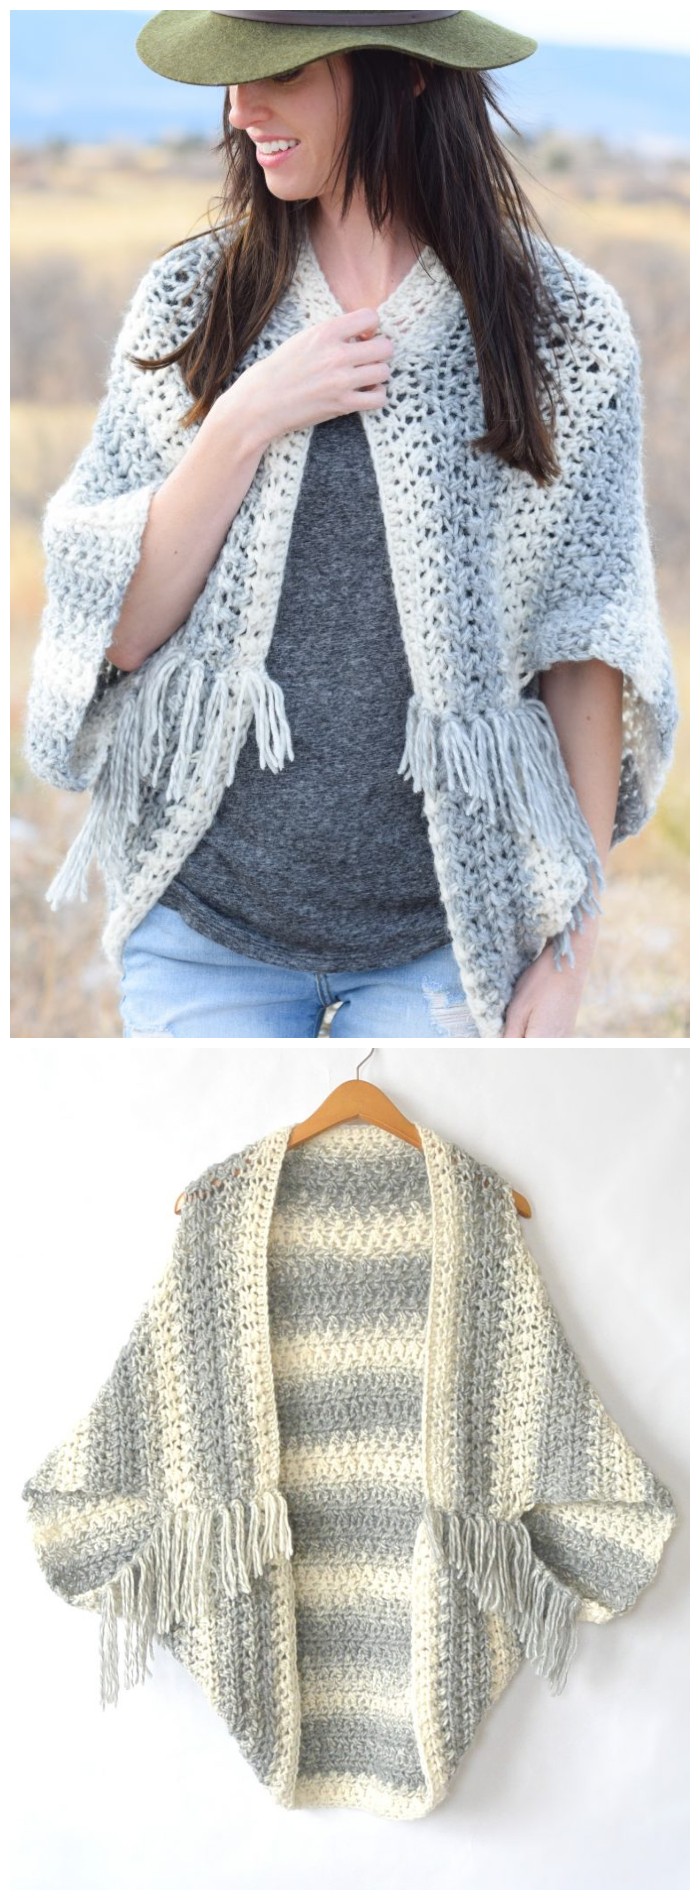 Blanket Sweater Crochet Pattern